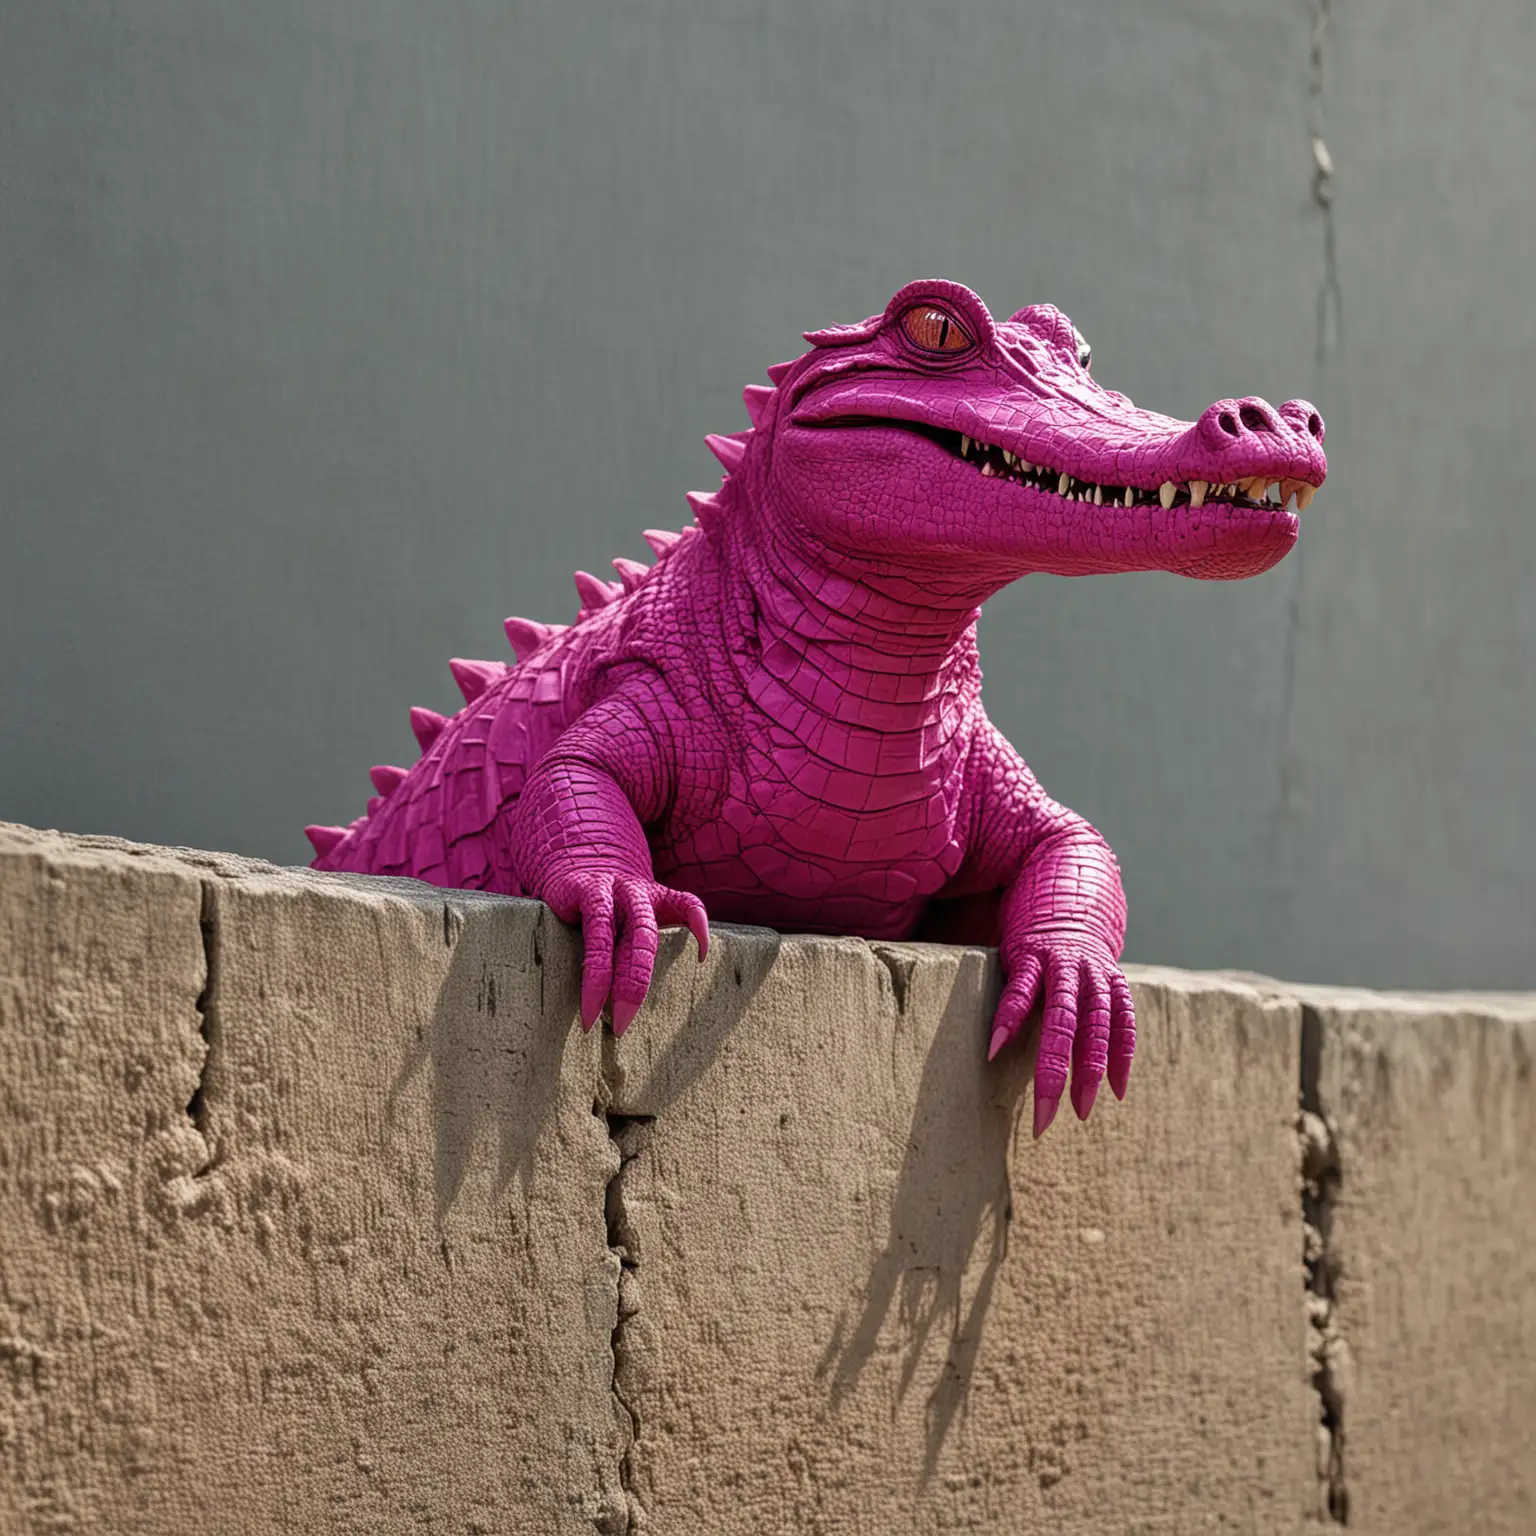 a magenta crocodile sitting on a wall